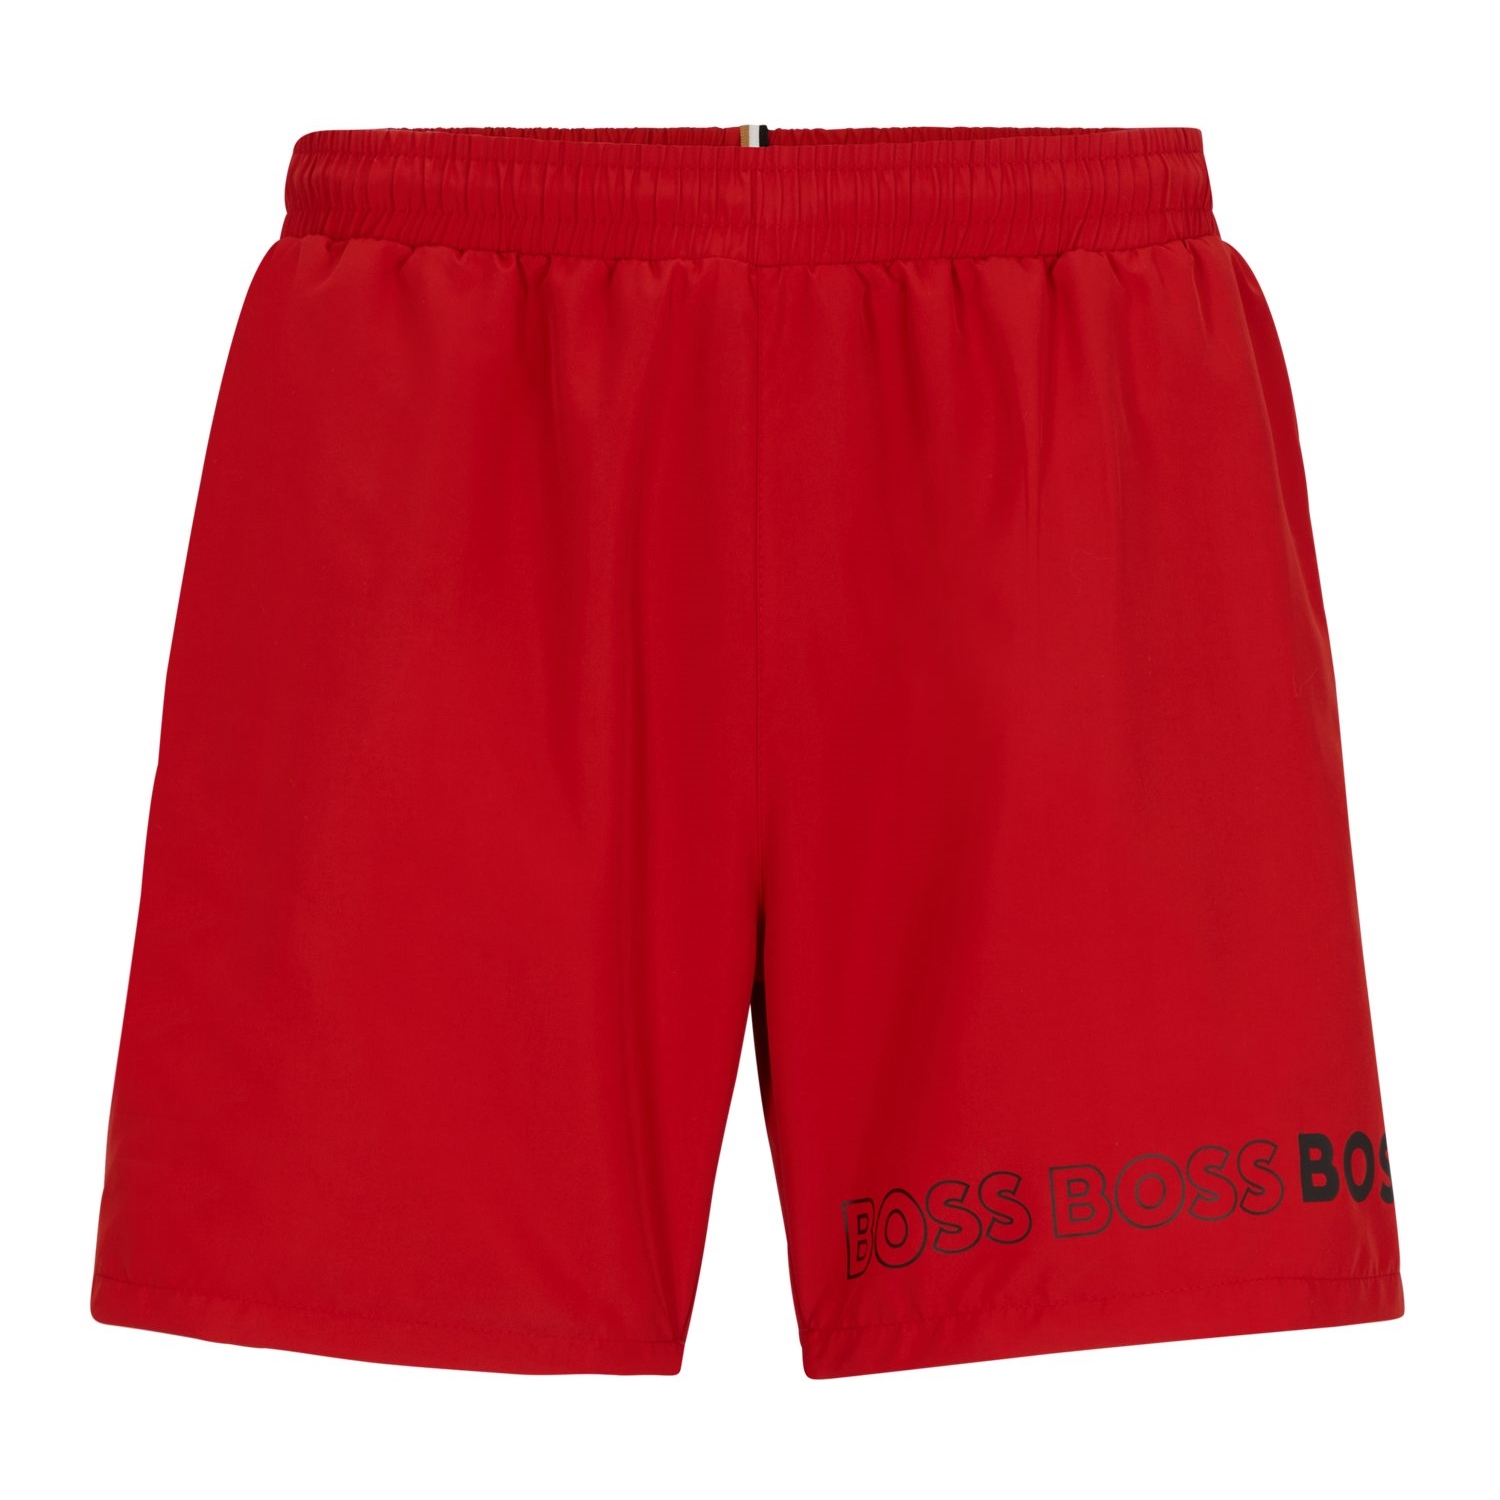 Купальные шорты Hugo Boss With Repeat Logos, красный купальные шорты hugo boss with repeat logos красный